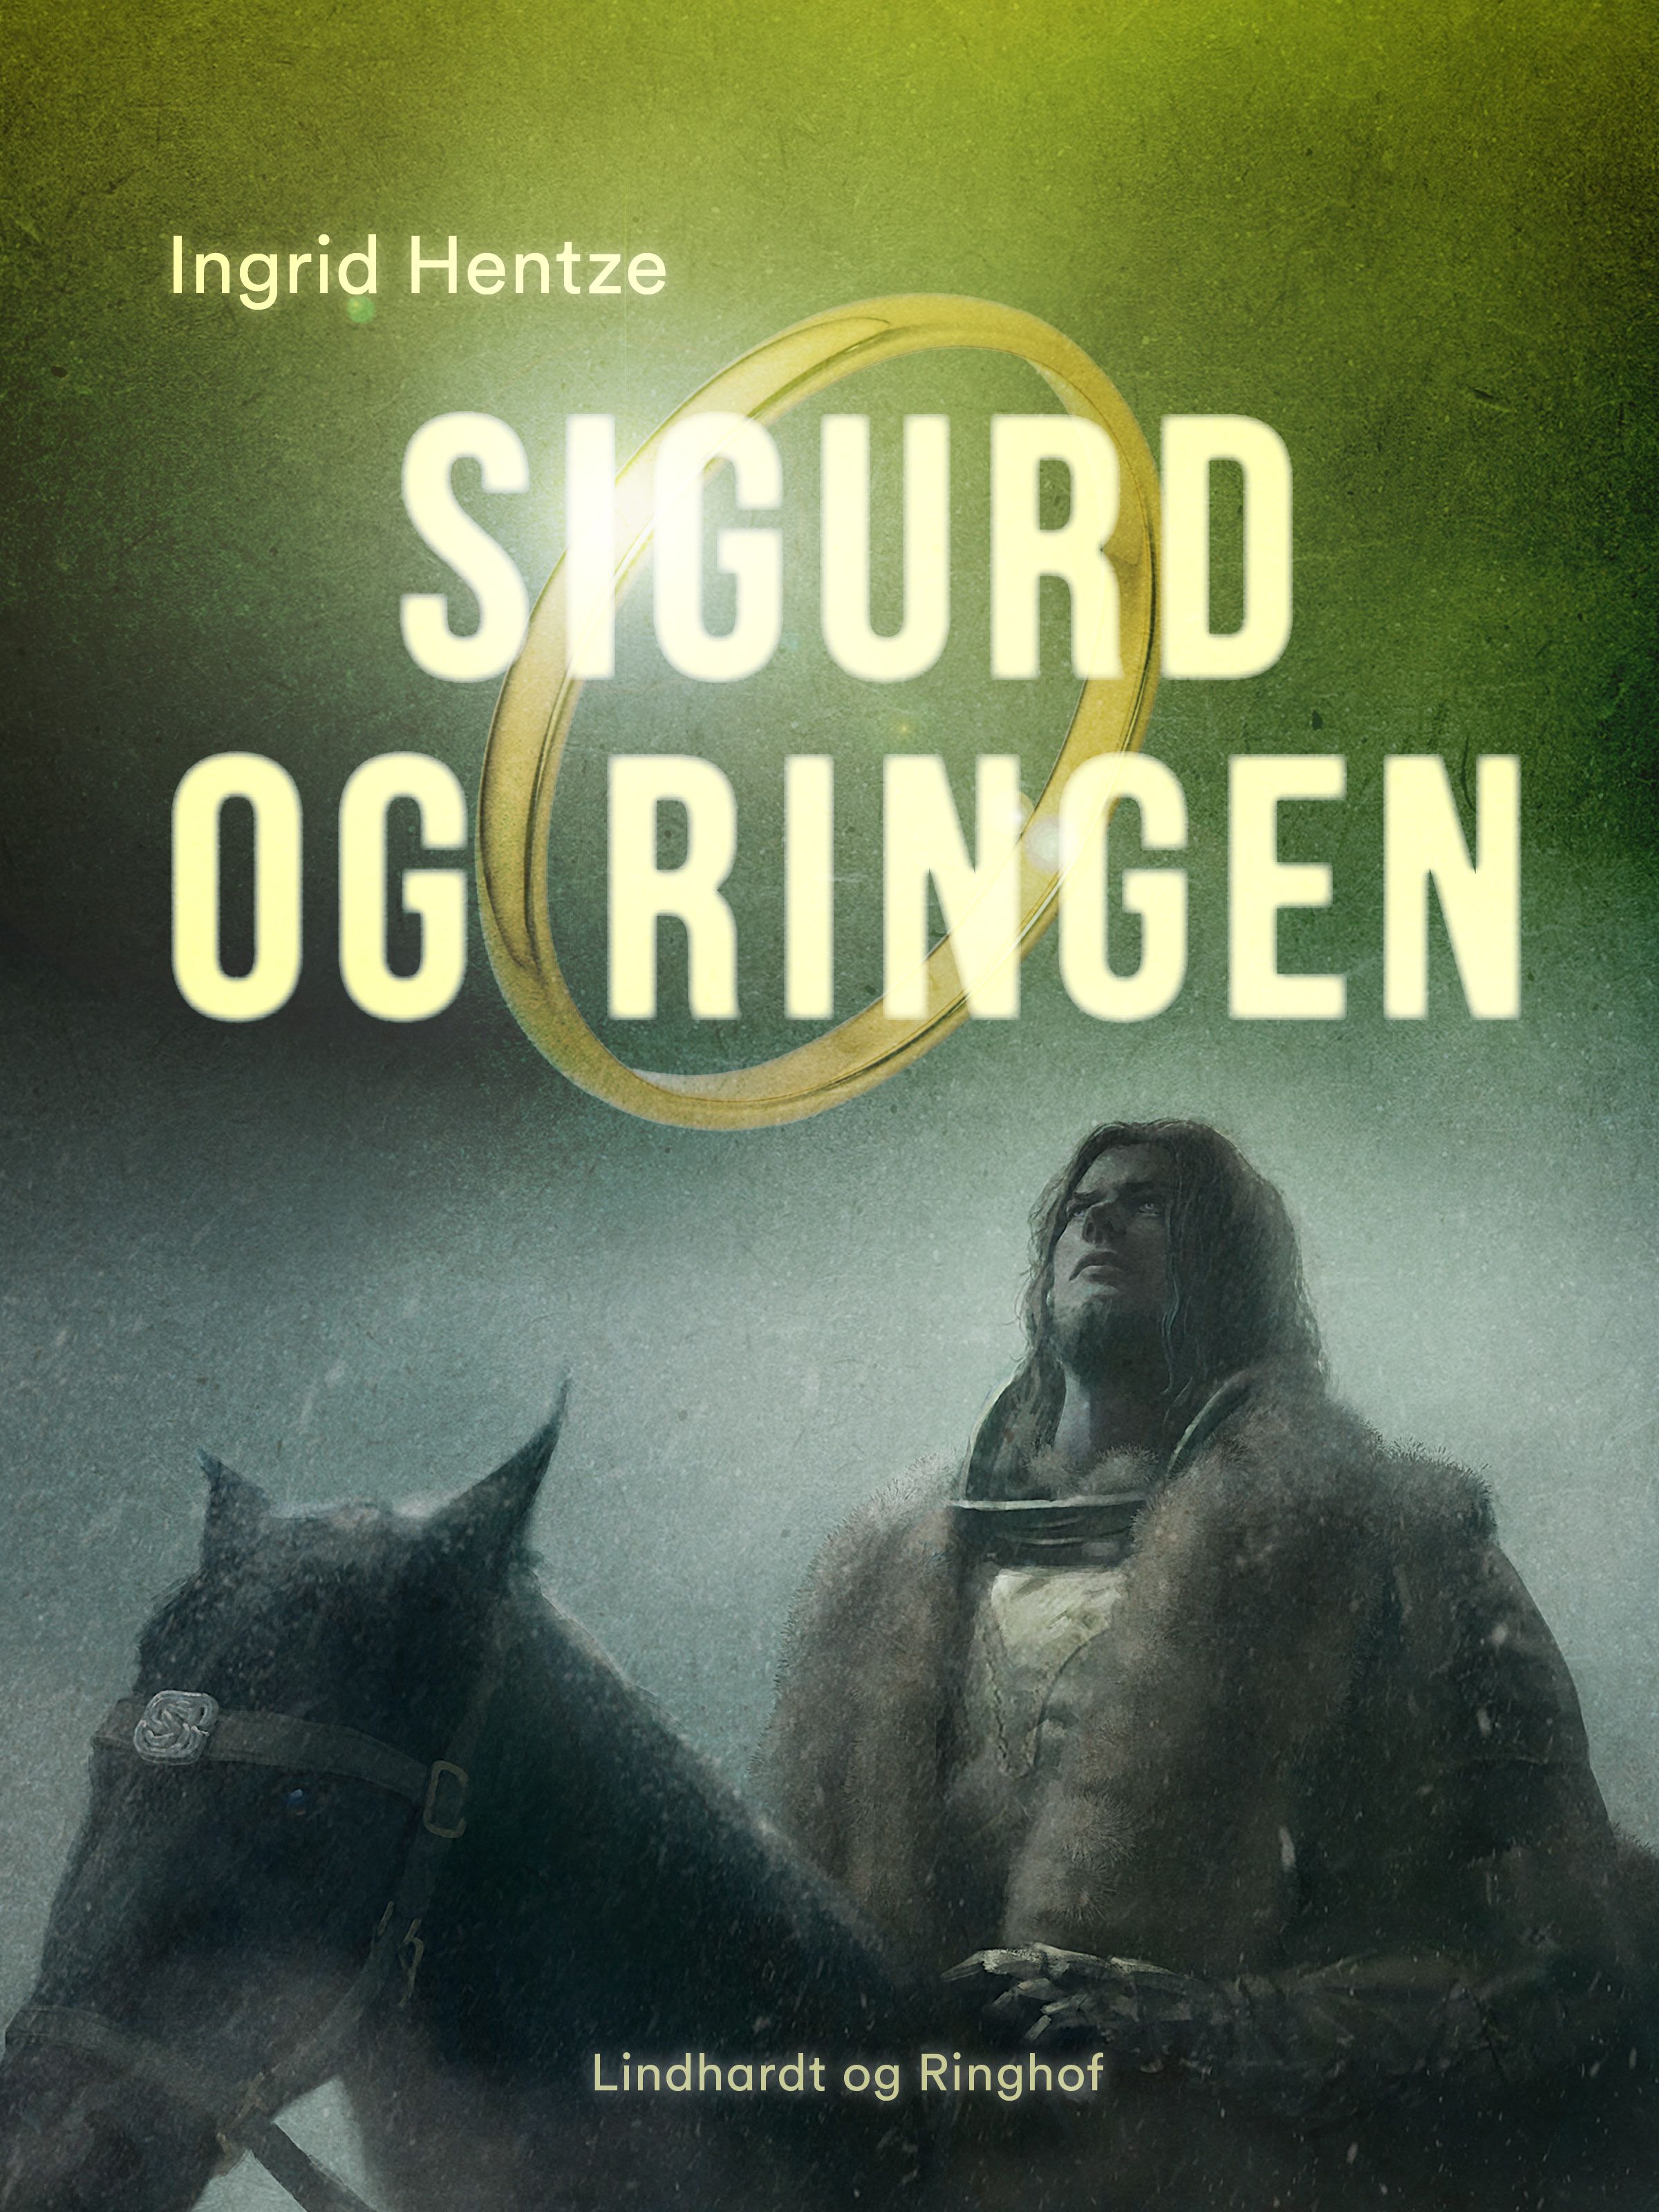 Sigurd og ringen, e-bog af Ingrid Hentze